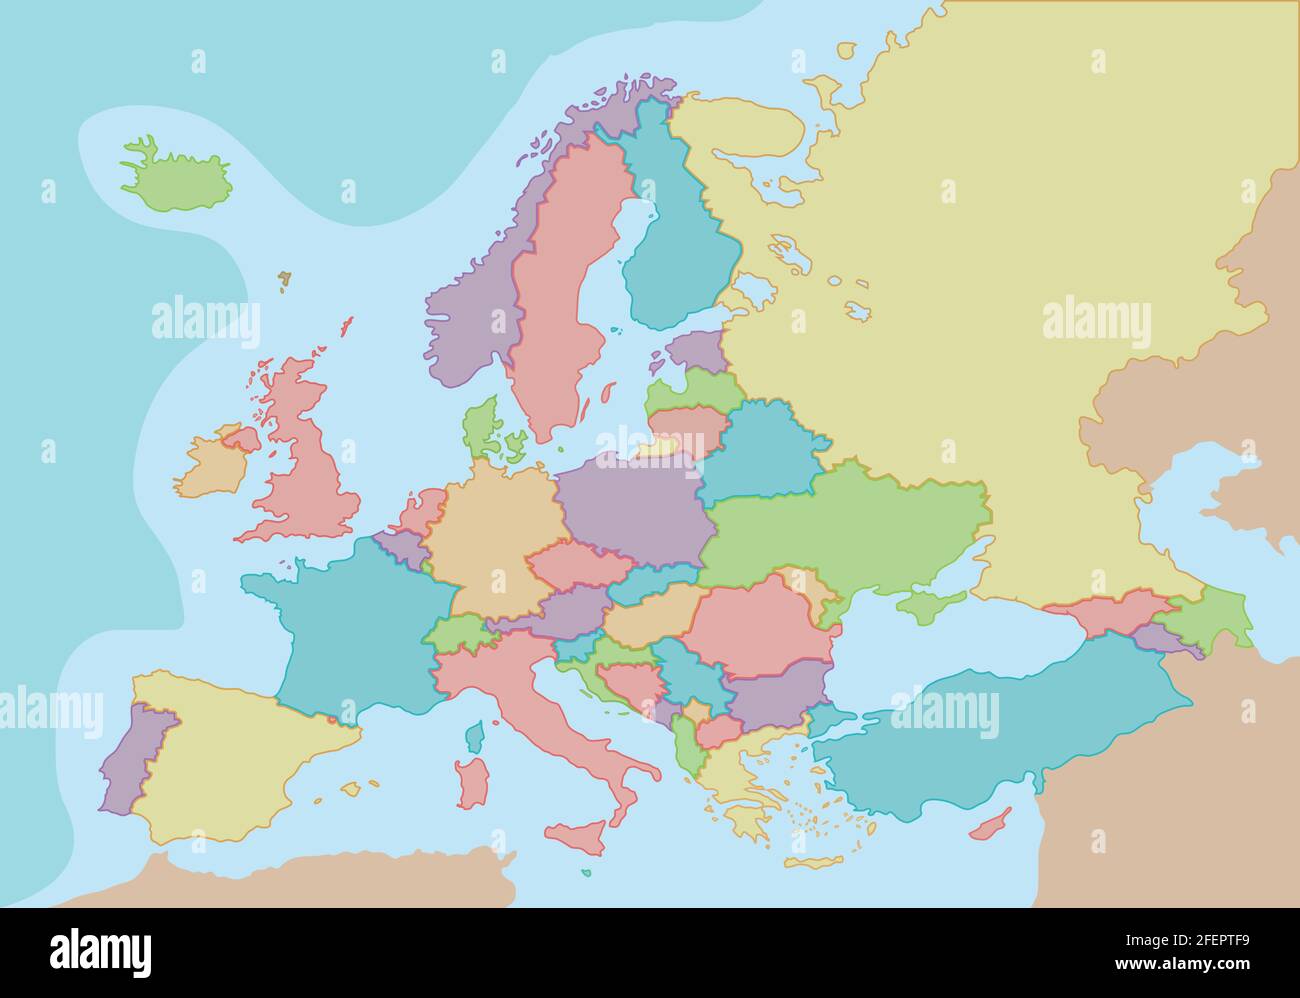 Mappa politica dell'Europa con colori e confini per ogni paese. Illustrazione vettoriale. Illustrazione Vettoriale